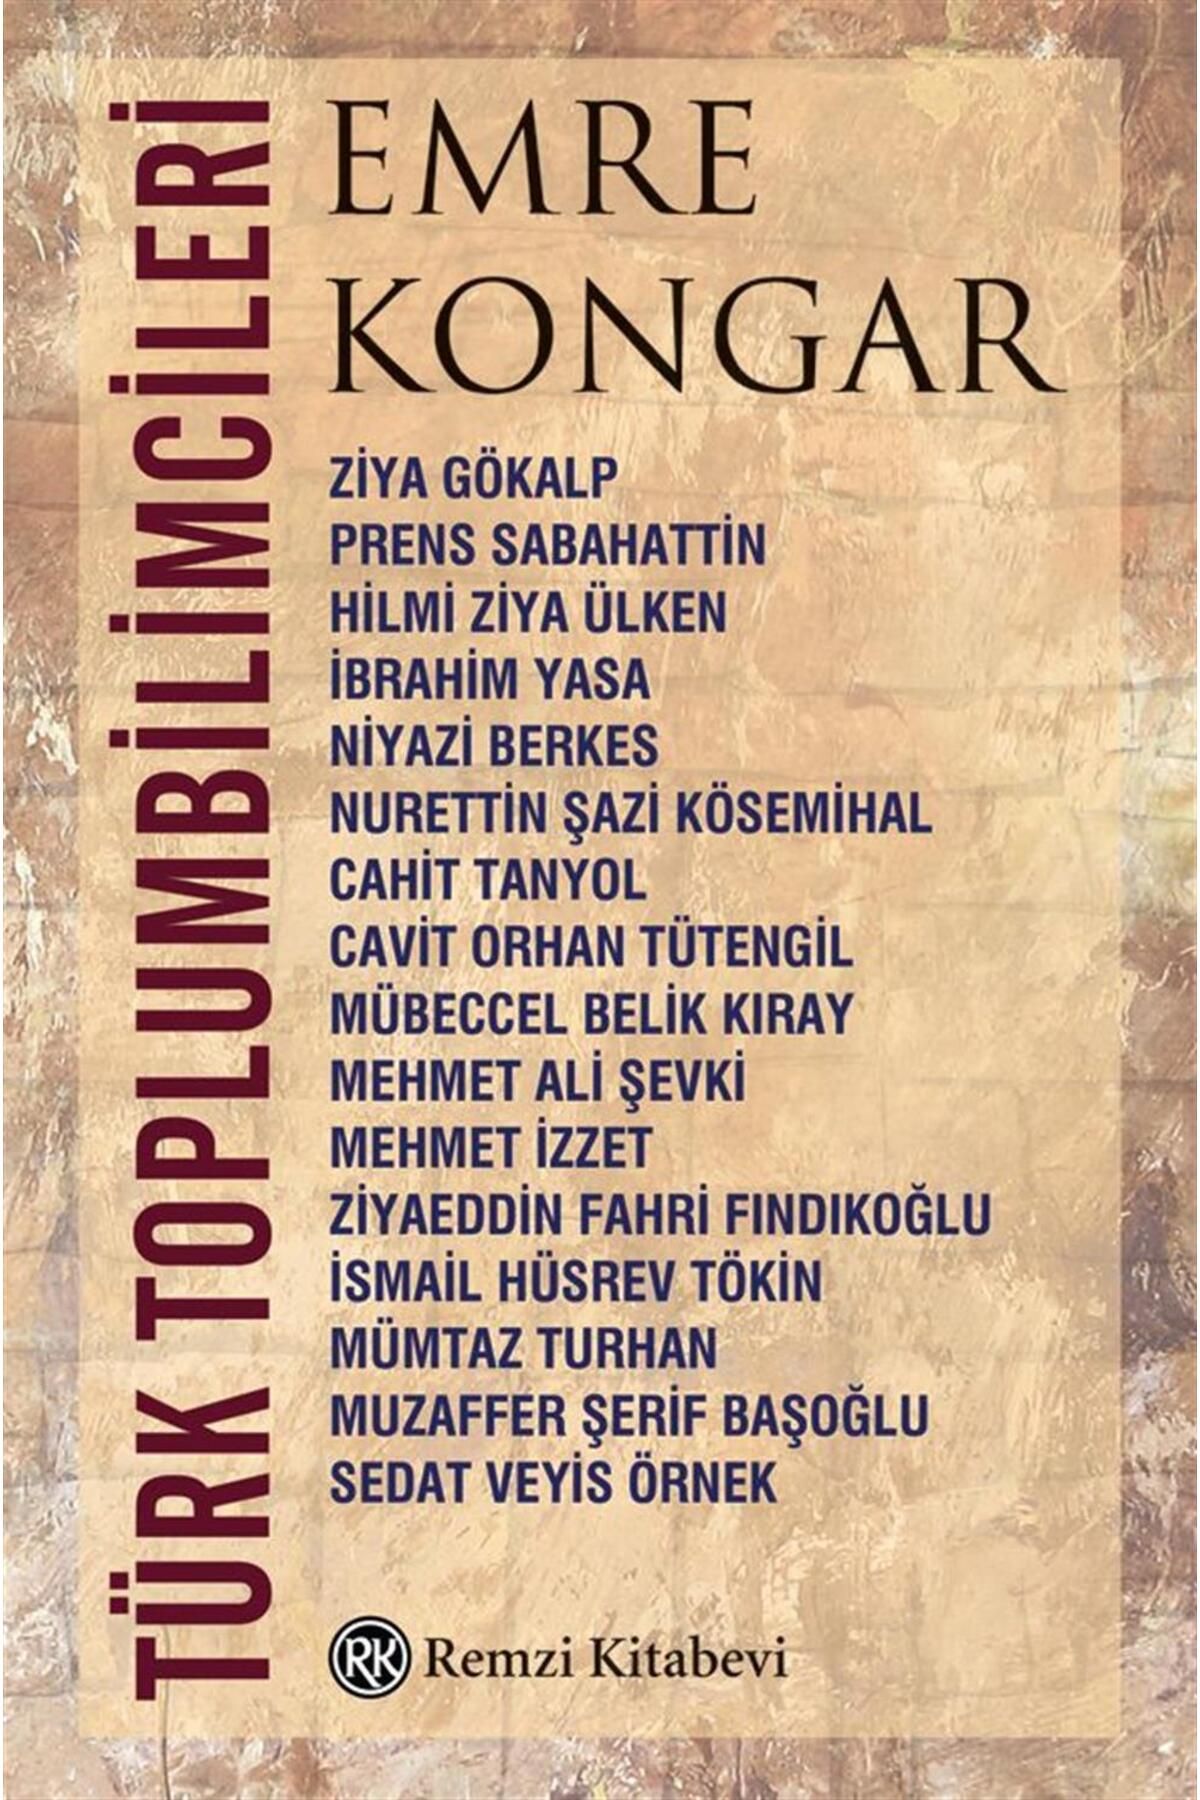 Remzi Kitabevi Türk Toplum Bilimcileri